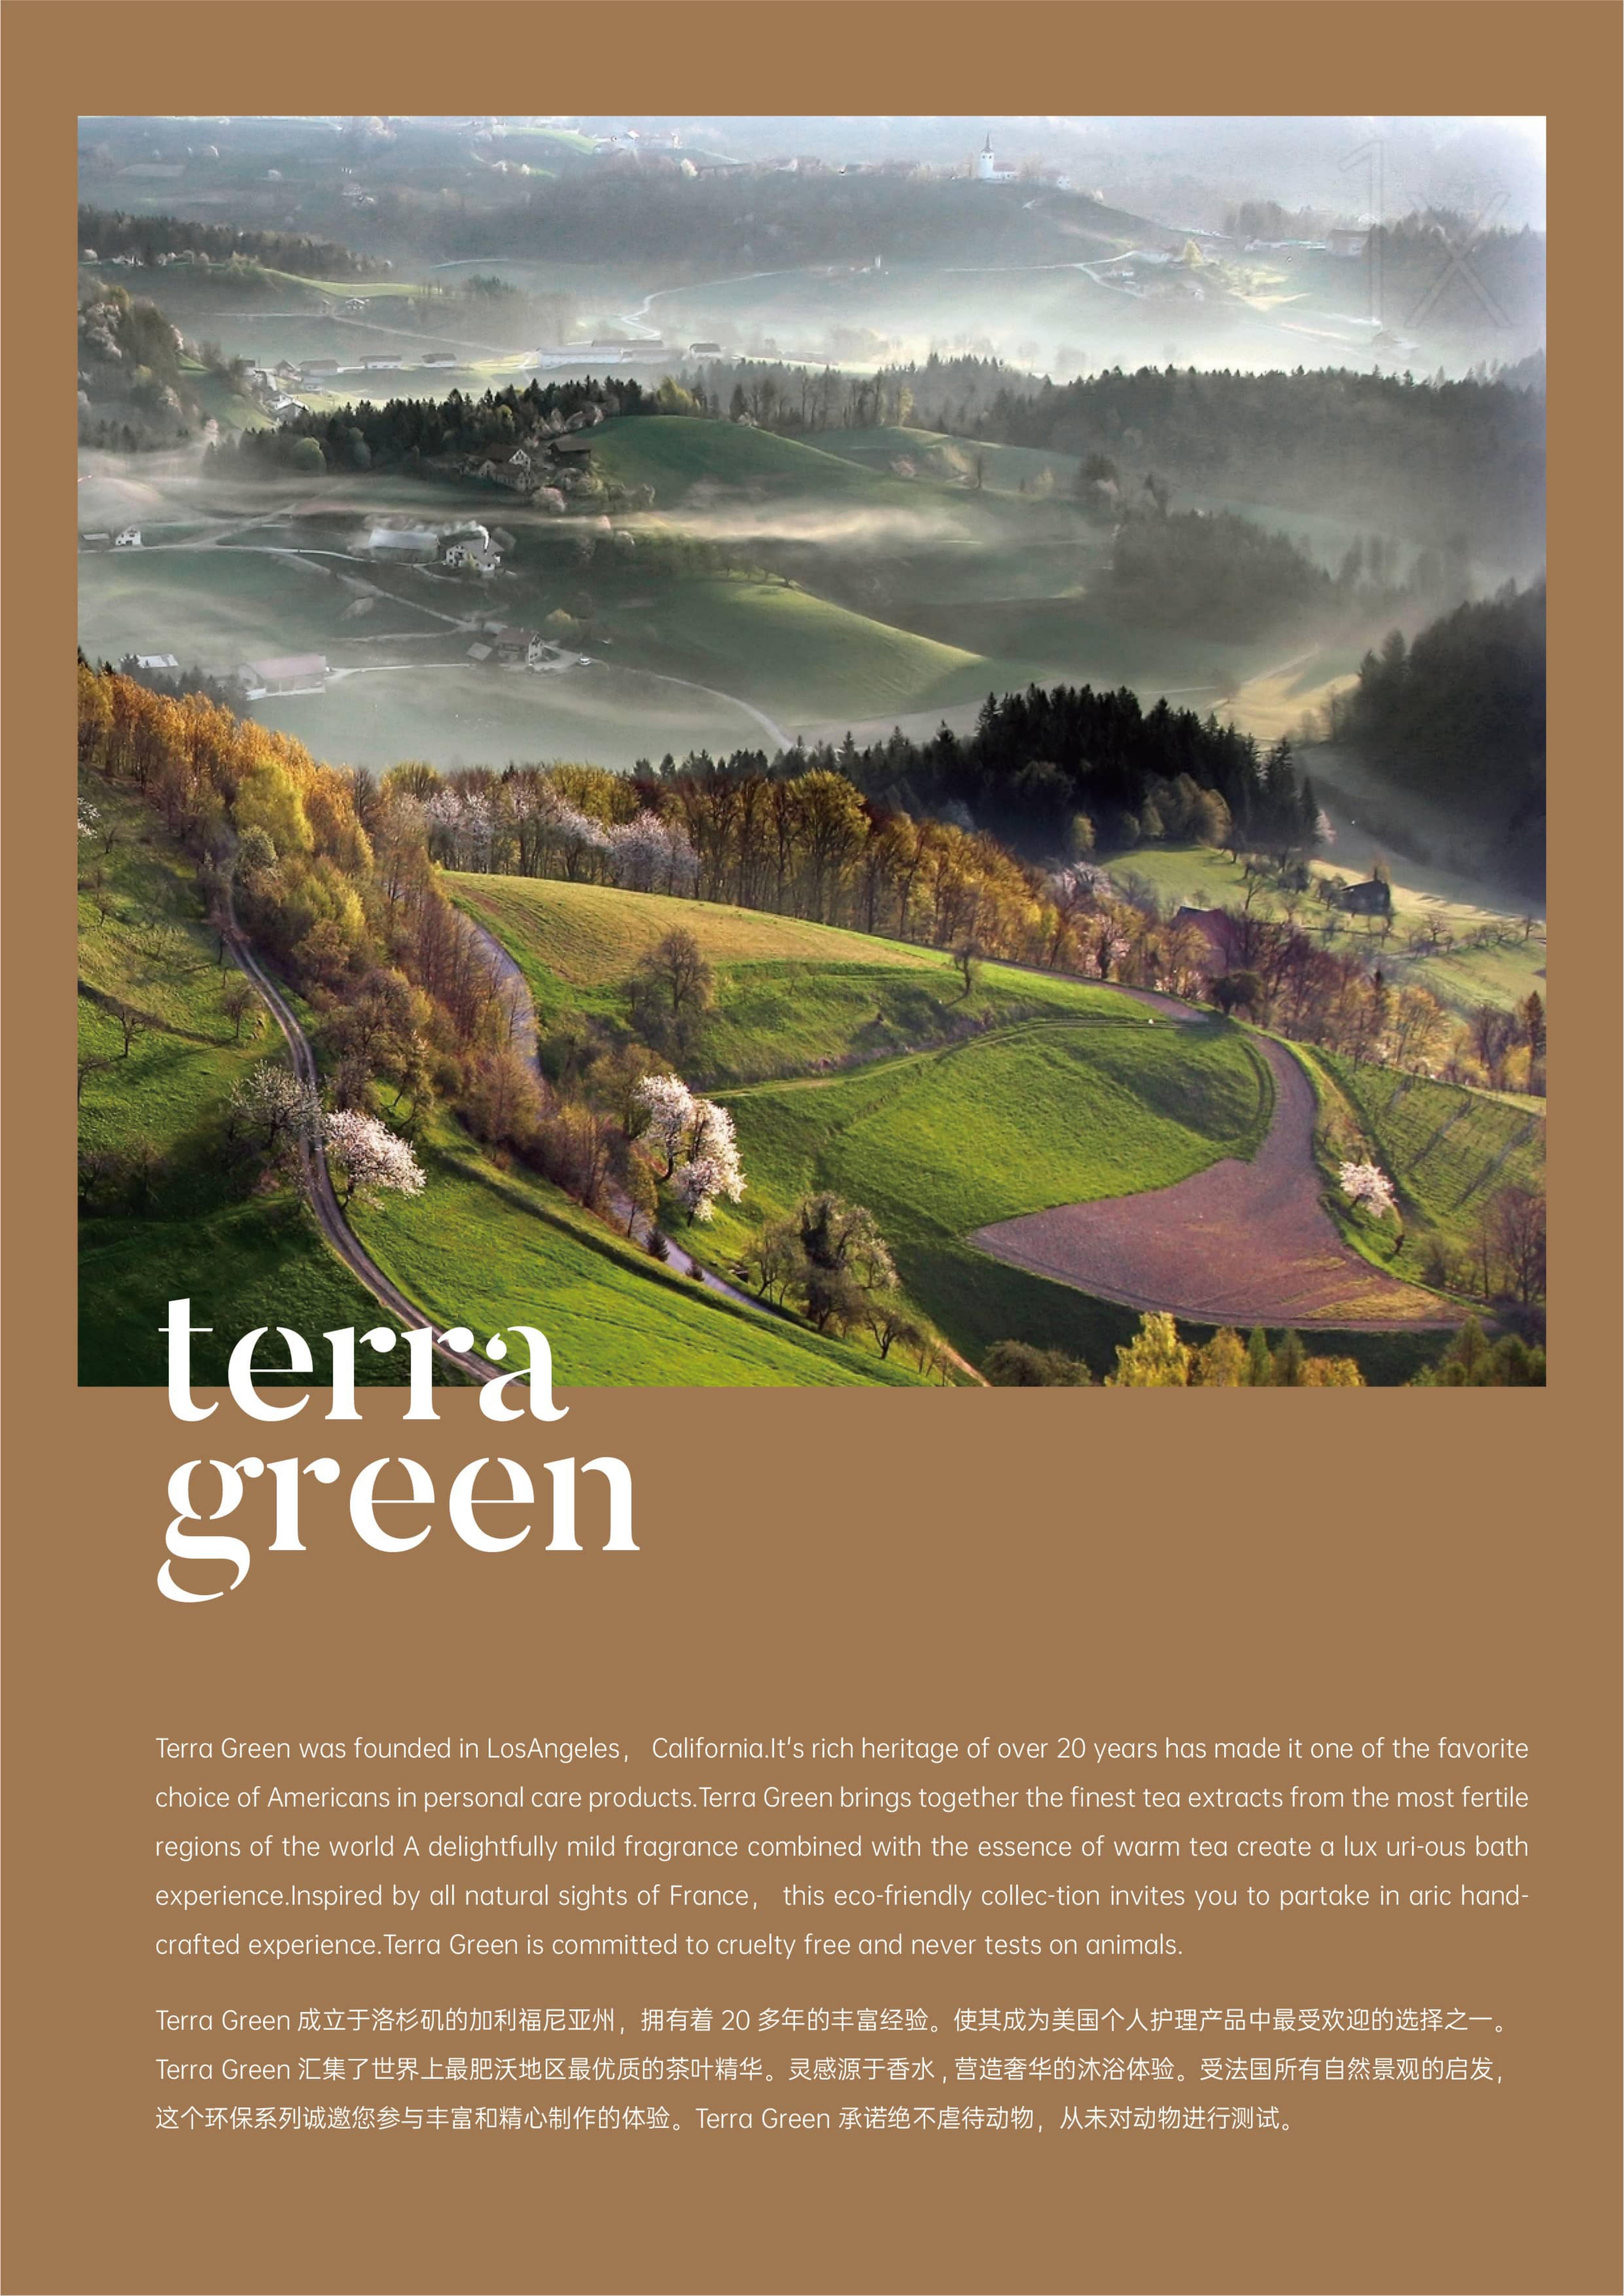 新版品牌图册 - Terra Green (特拉·格林)_01.jpg